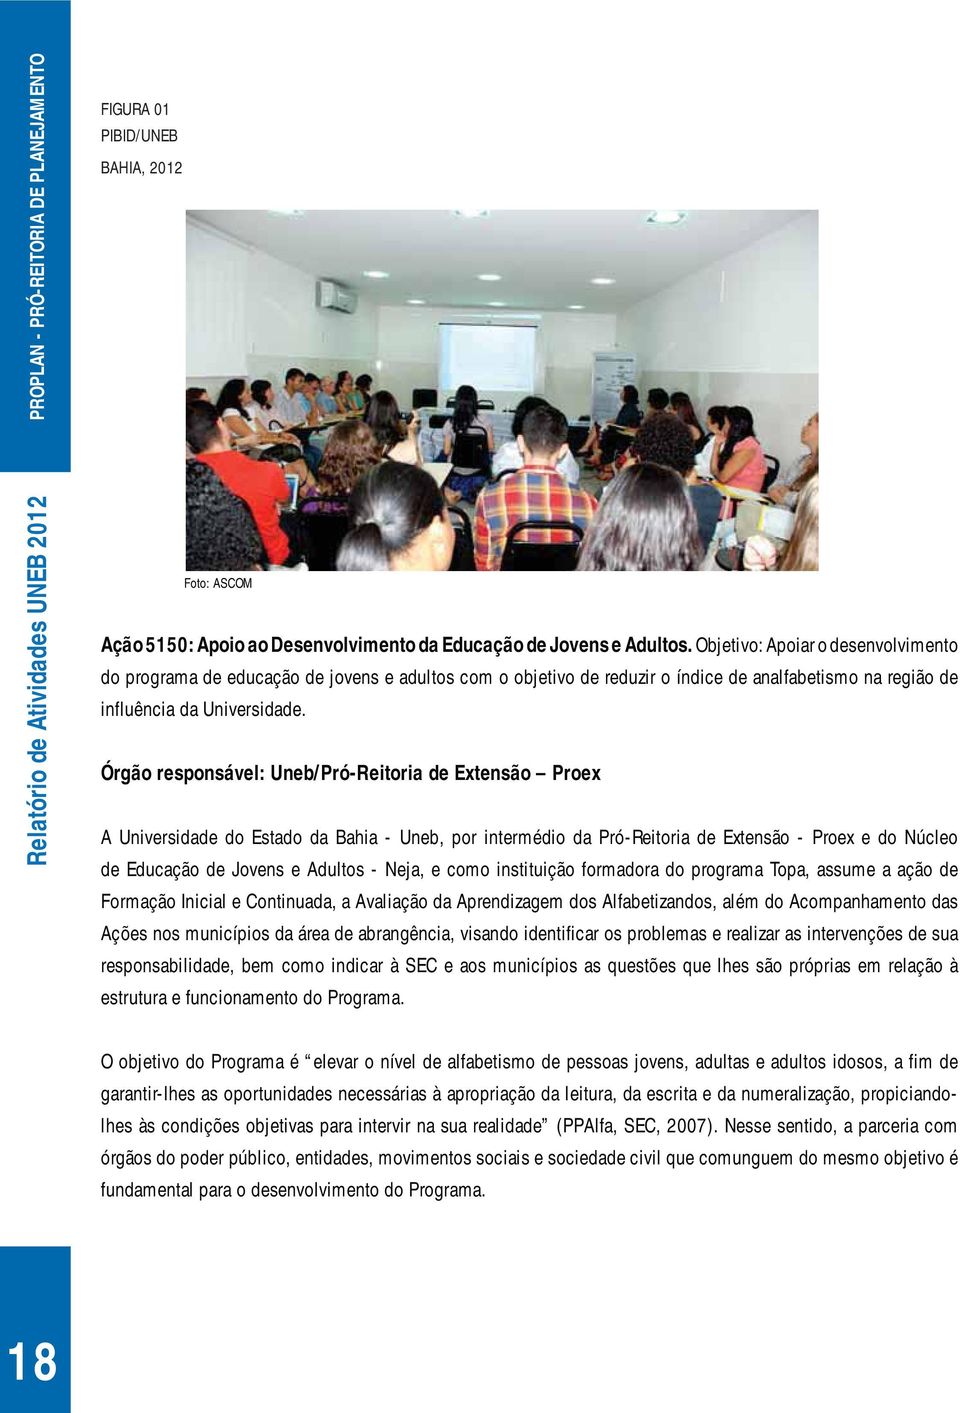 Órgão responsável: Uneb/Pró-Reitoria de Extensão Proex A Universidade do Estado da Bahia - Uneb, por intermédio da Pró-Reitoria de Extensão - Proex e do Núcleo de Educação de Jovens e Adultos - Neja,